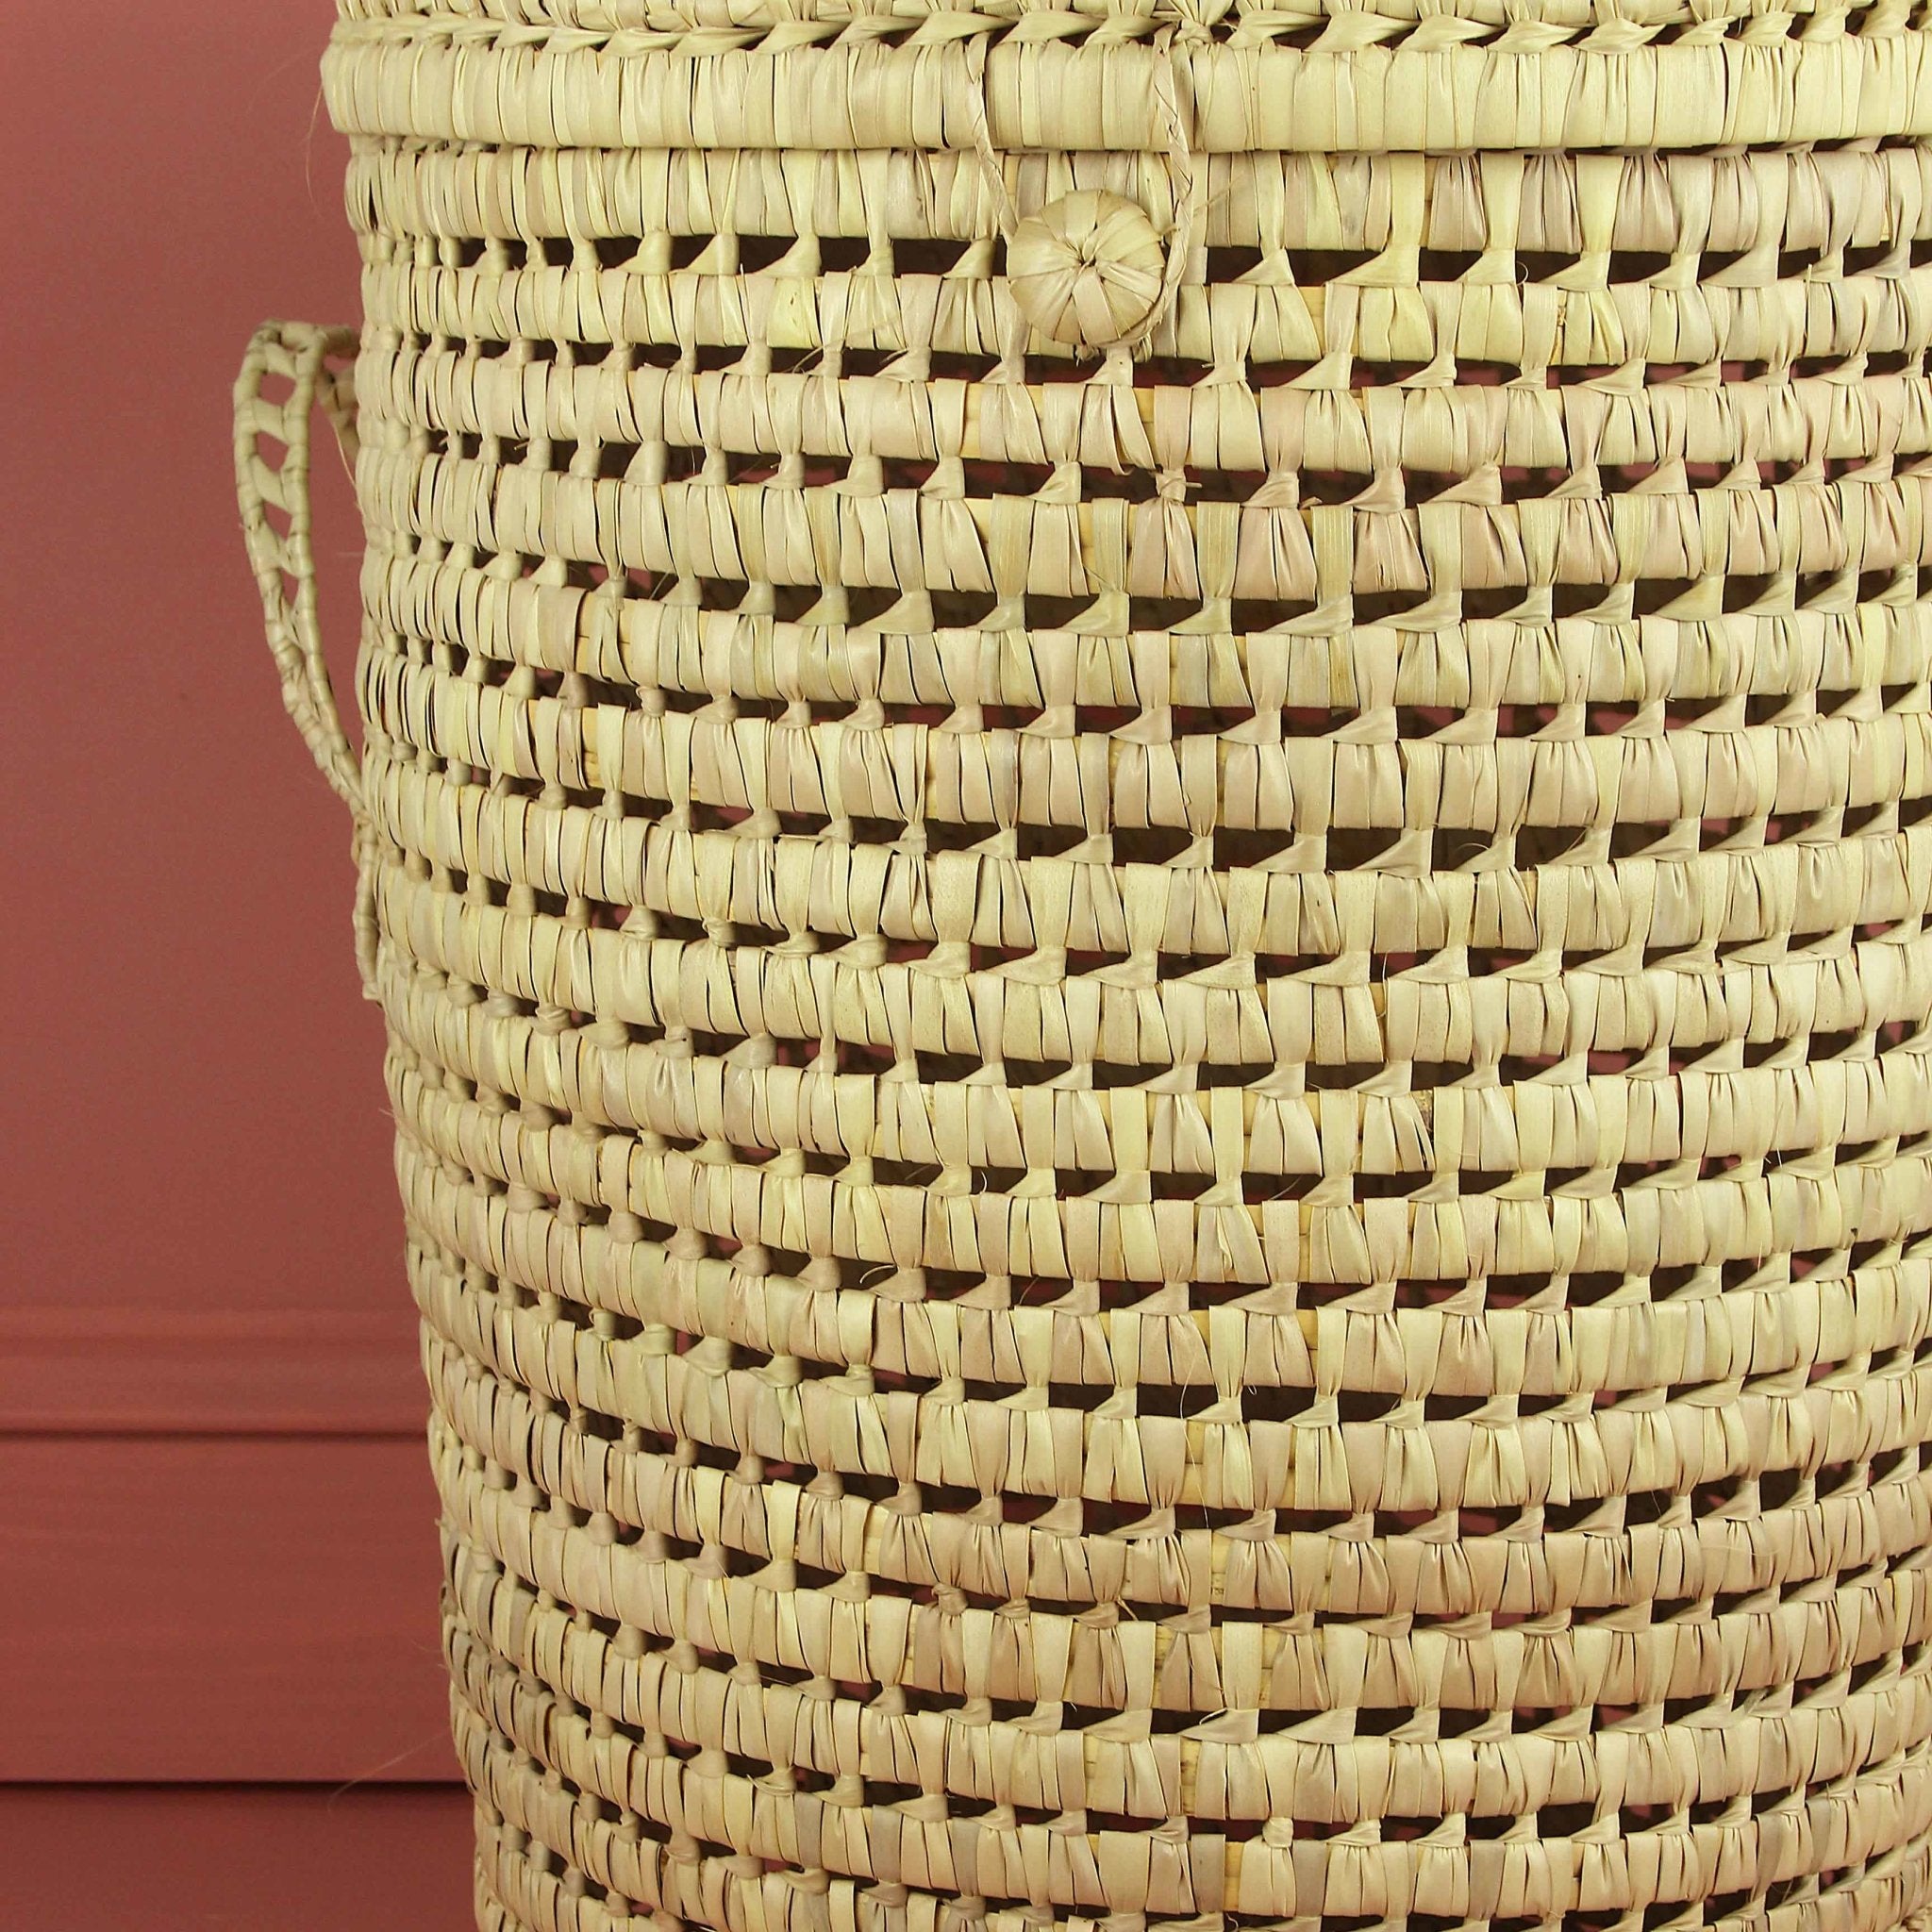 Menara Storage Baskets - Artisan Stories